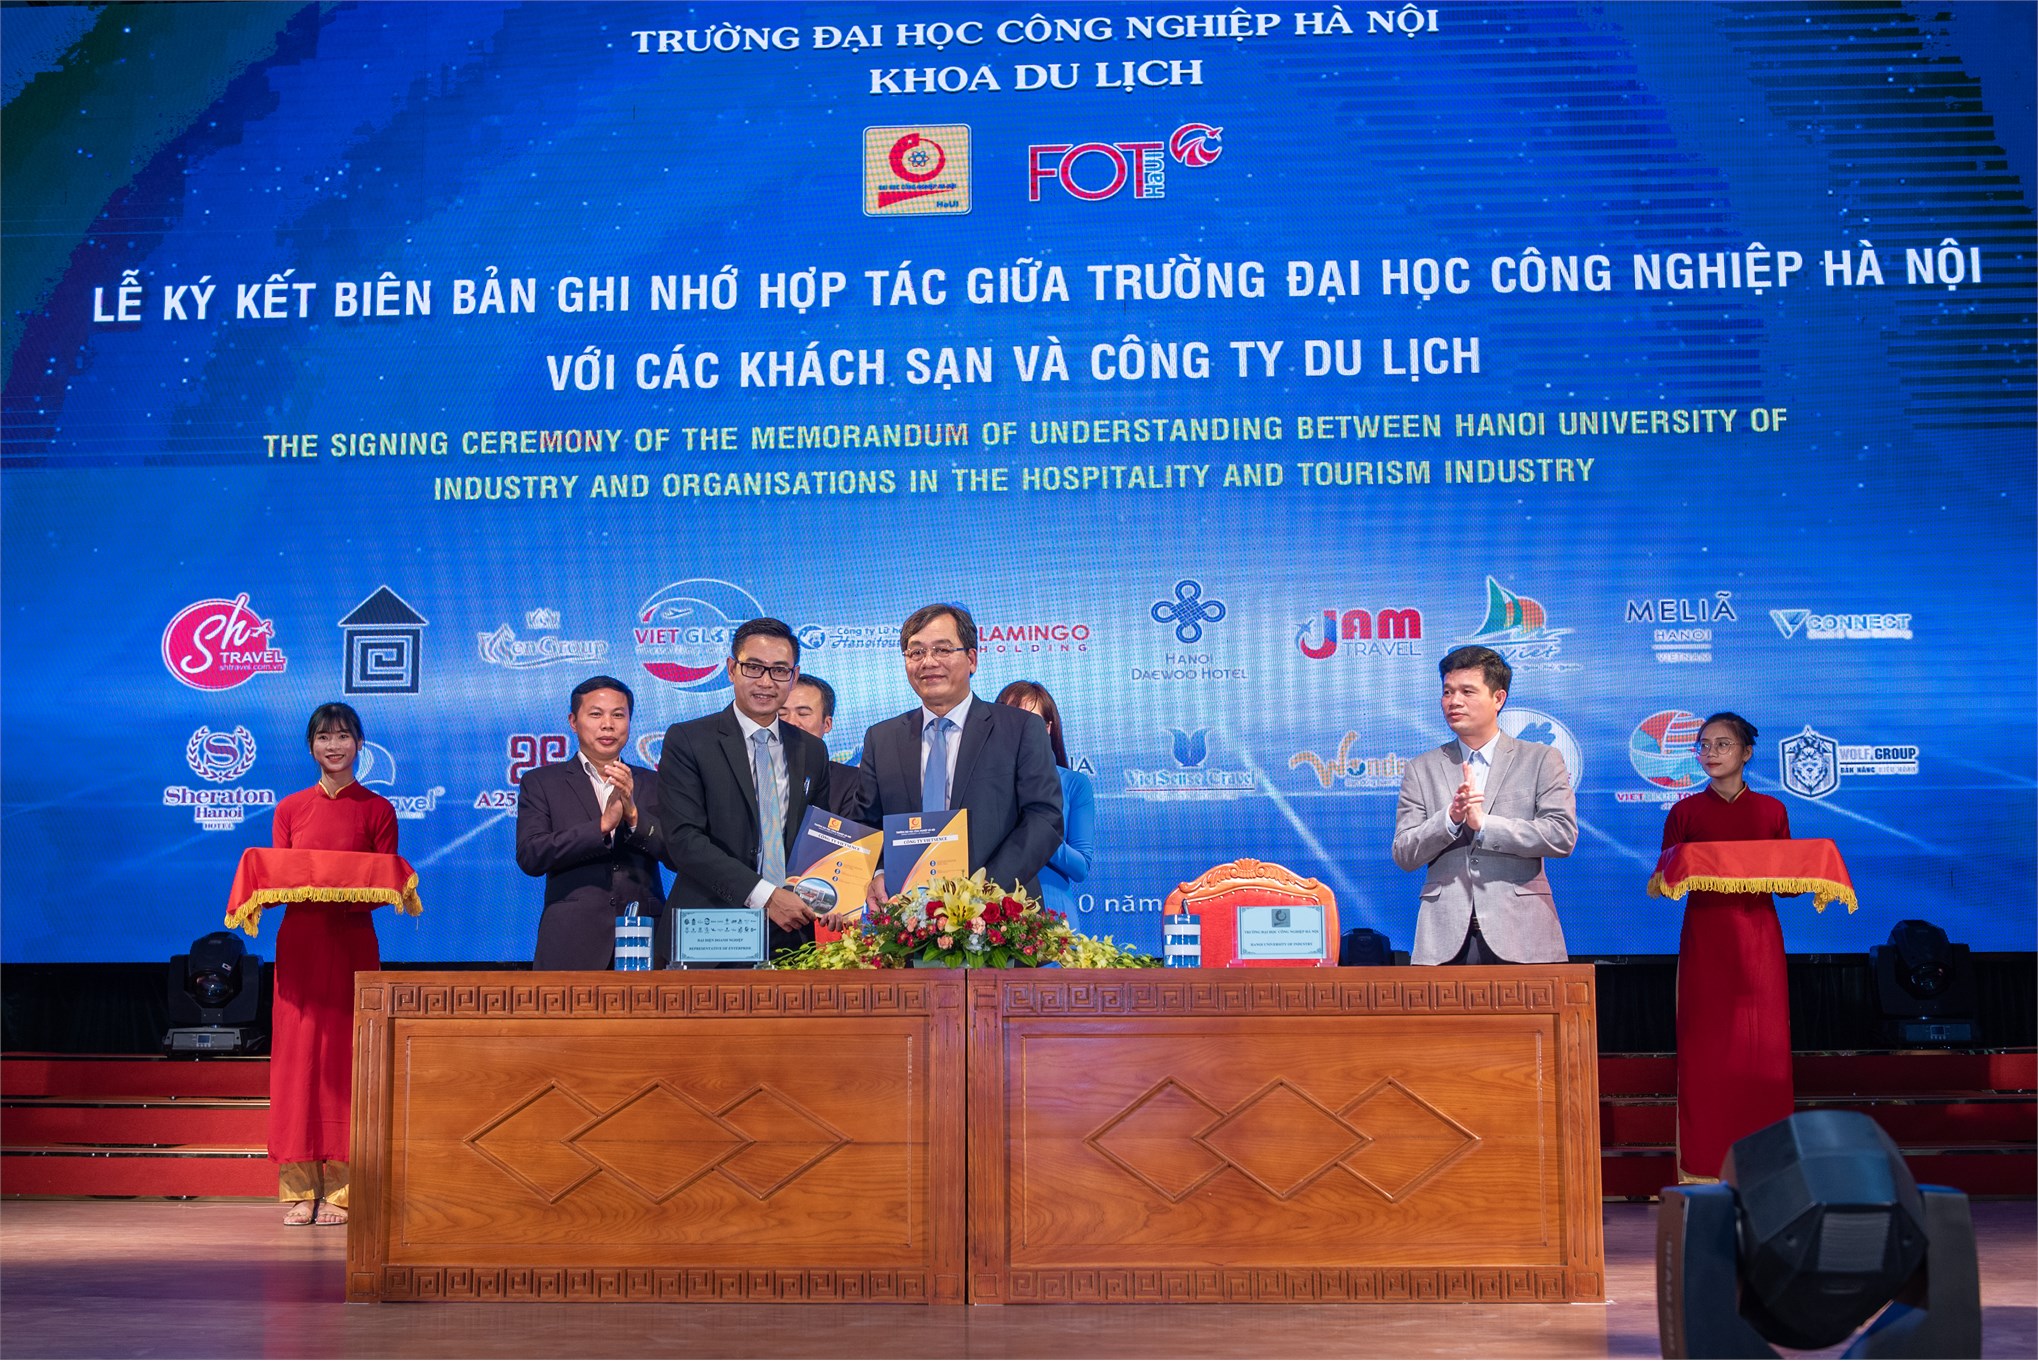 Lễ ký kết biên bản ghi nhớ hợp tác giữa trường Đại học Công nghiệp Hà Nội và các công ty du lịch